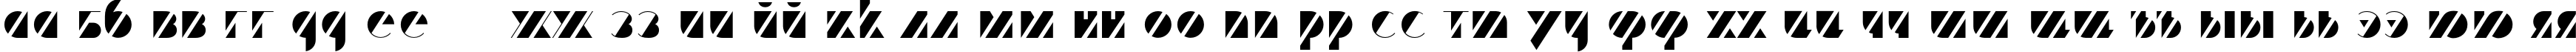 Пример написания русского алфавита шрифтом Trafaret